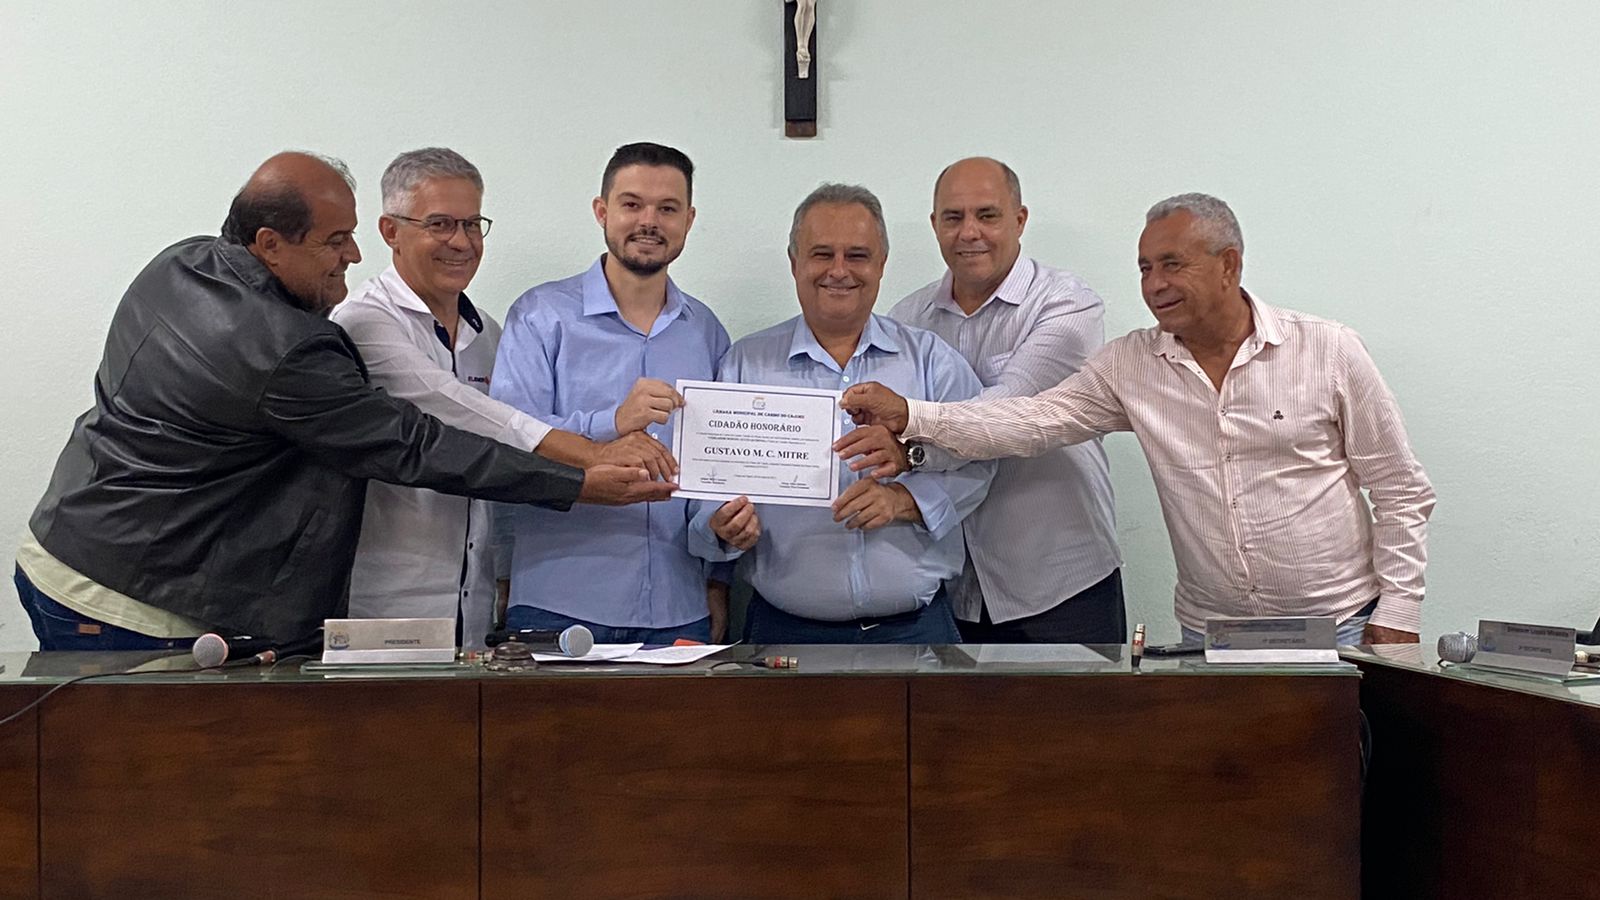 Mitre recebe na Câmara Municipal título de cidadão honorário de Carmo do Cajuru